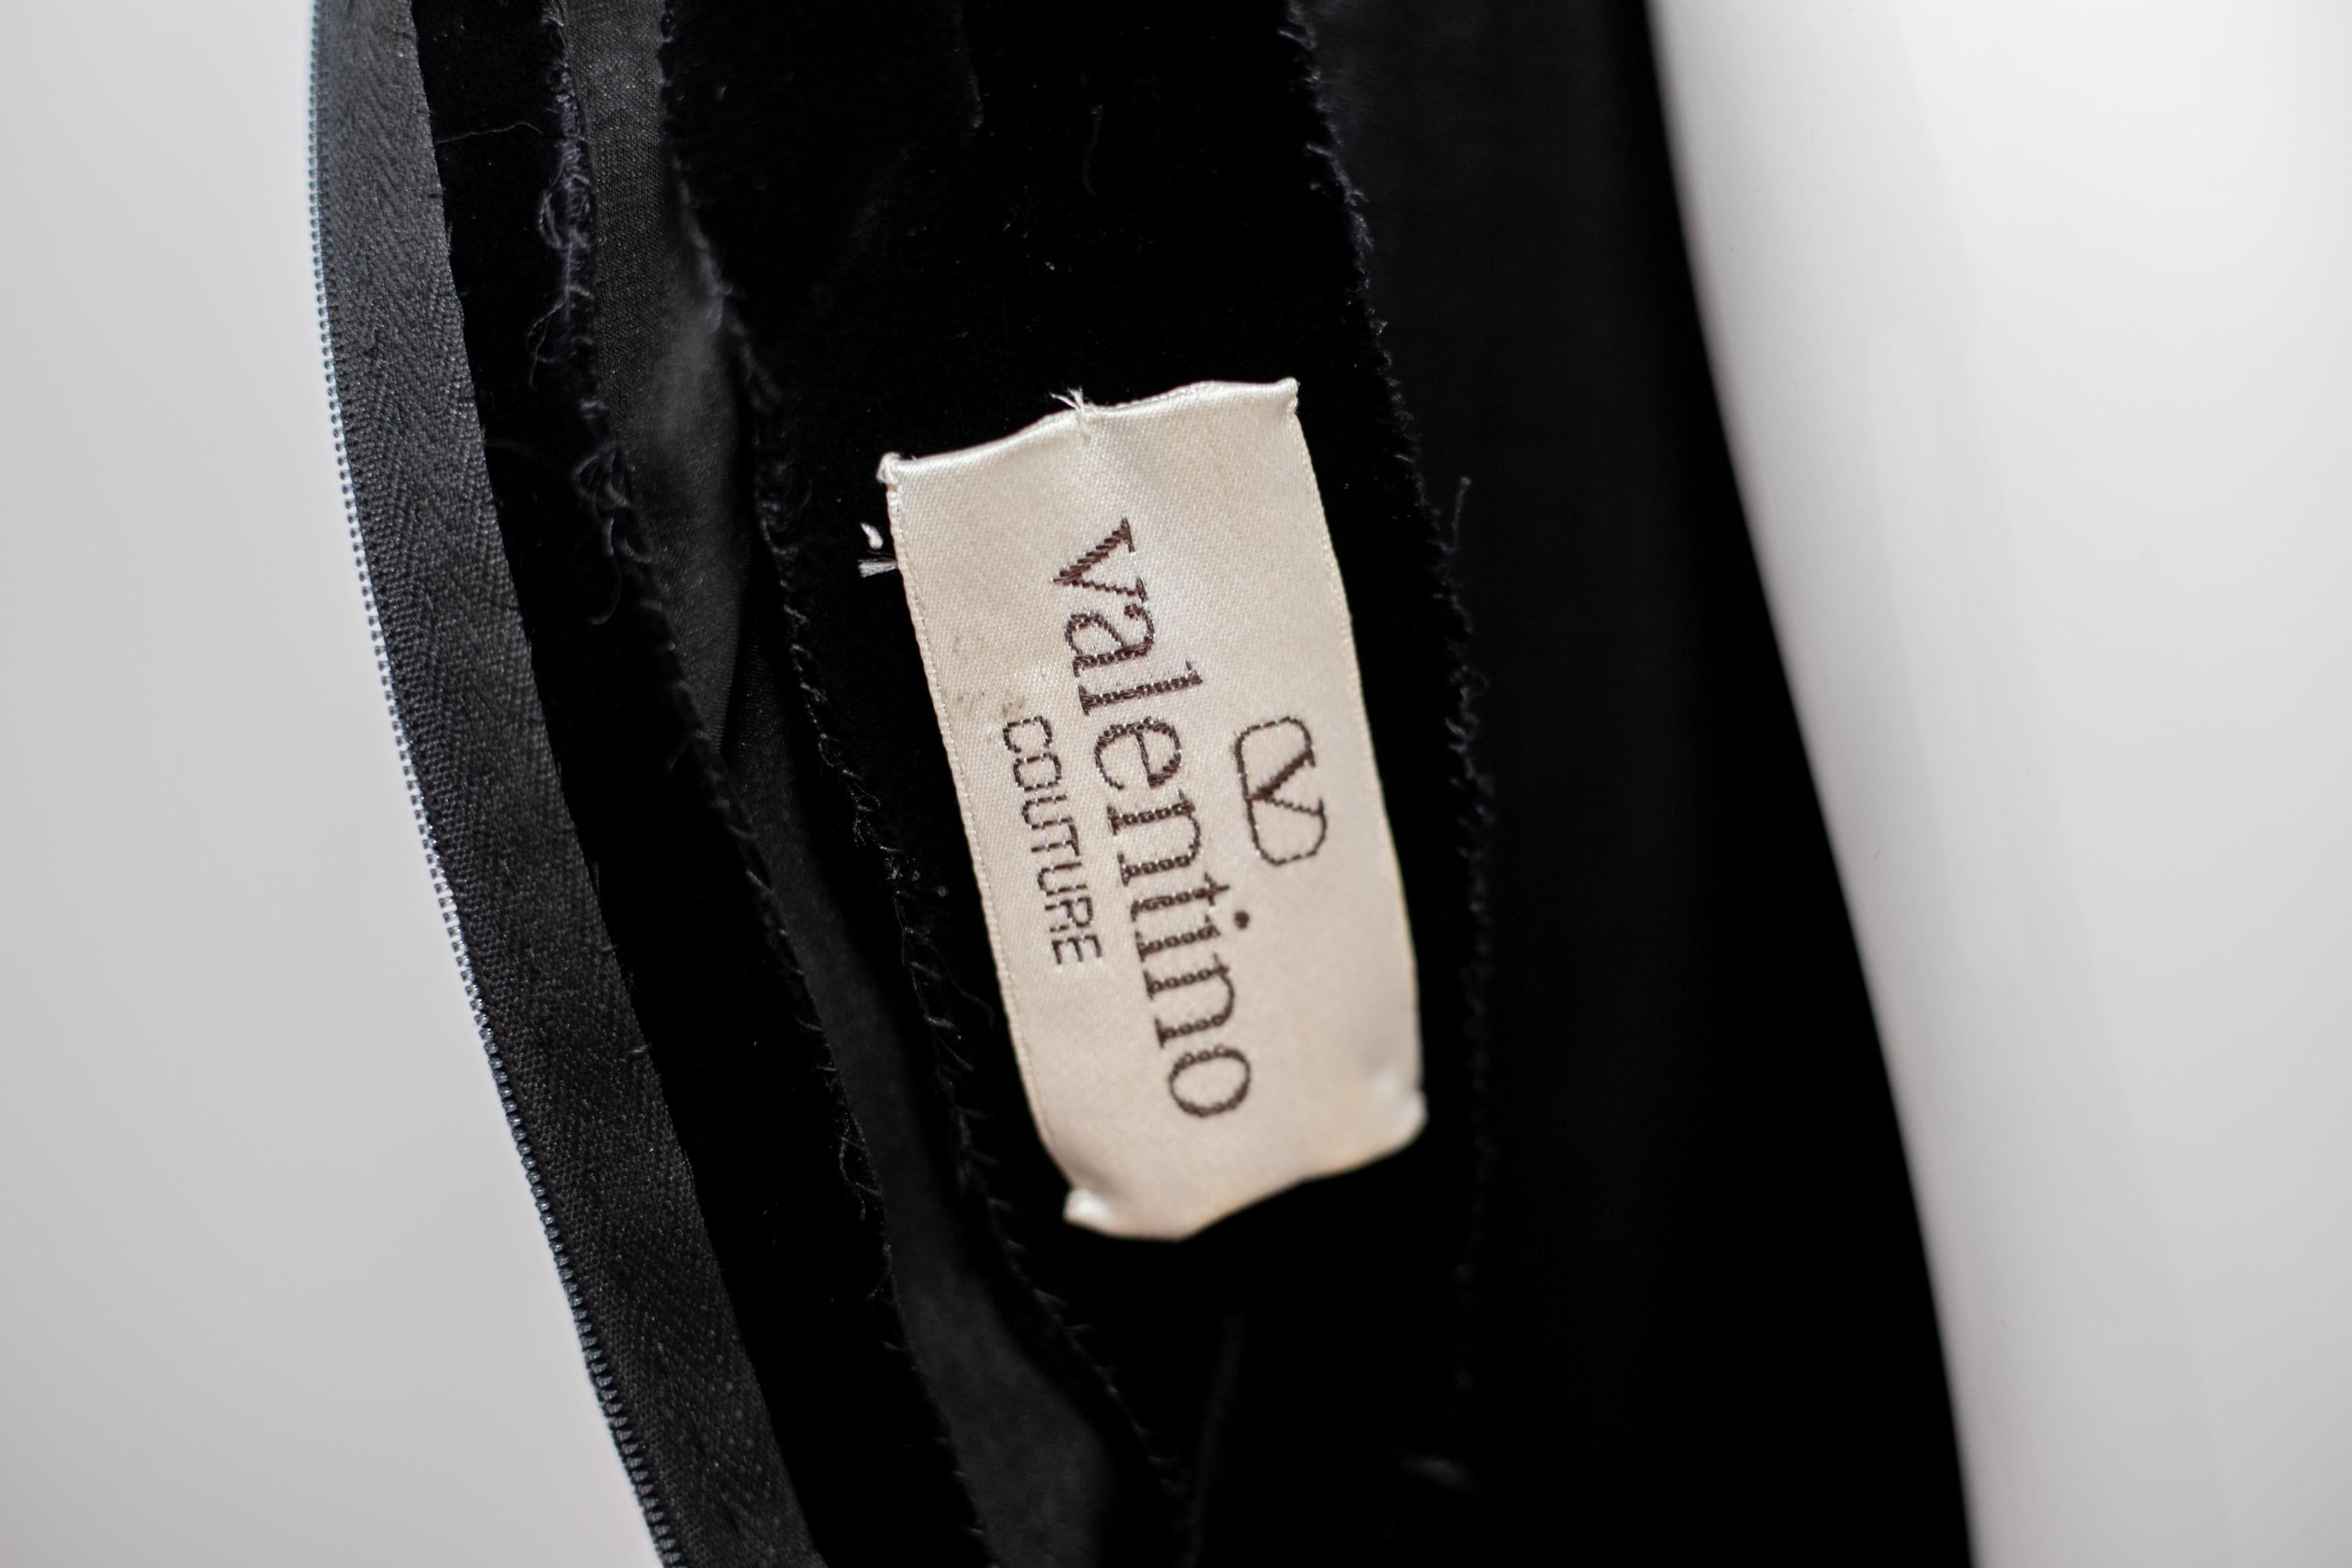 Importante et très élégante robe de soirée conçue par le grand Valentino dans les années 1990.
La robe a l'étiquette originale.
La robe est faite d'un velours noir très élégant et se compose d'un corset à une épaule, sur lequel on peut voir un nœud